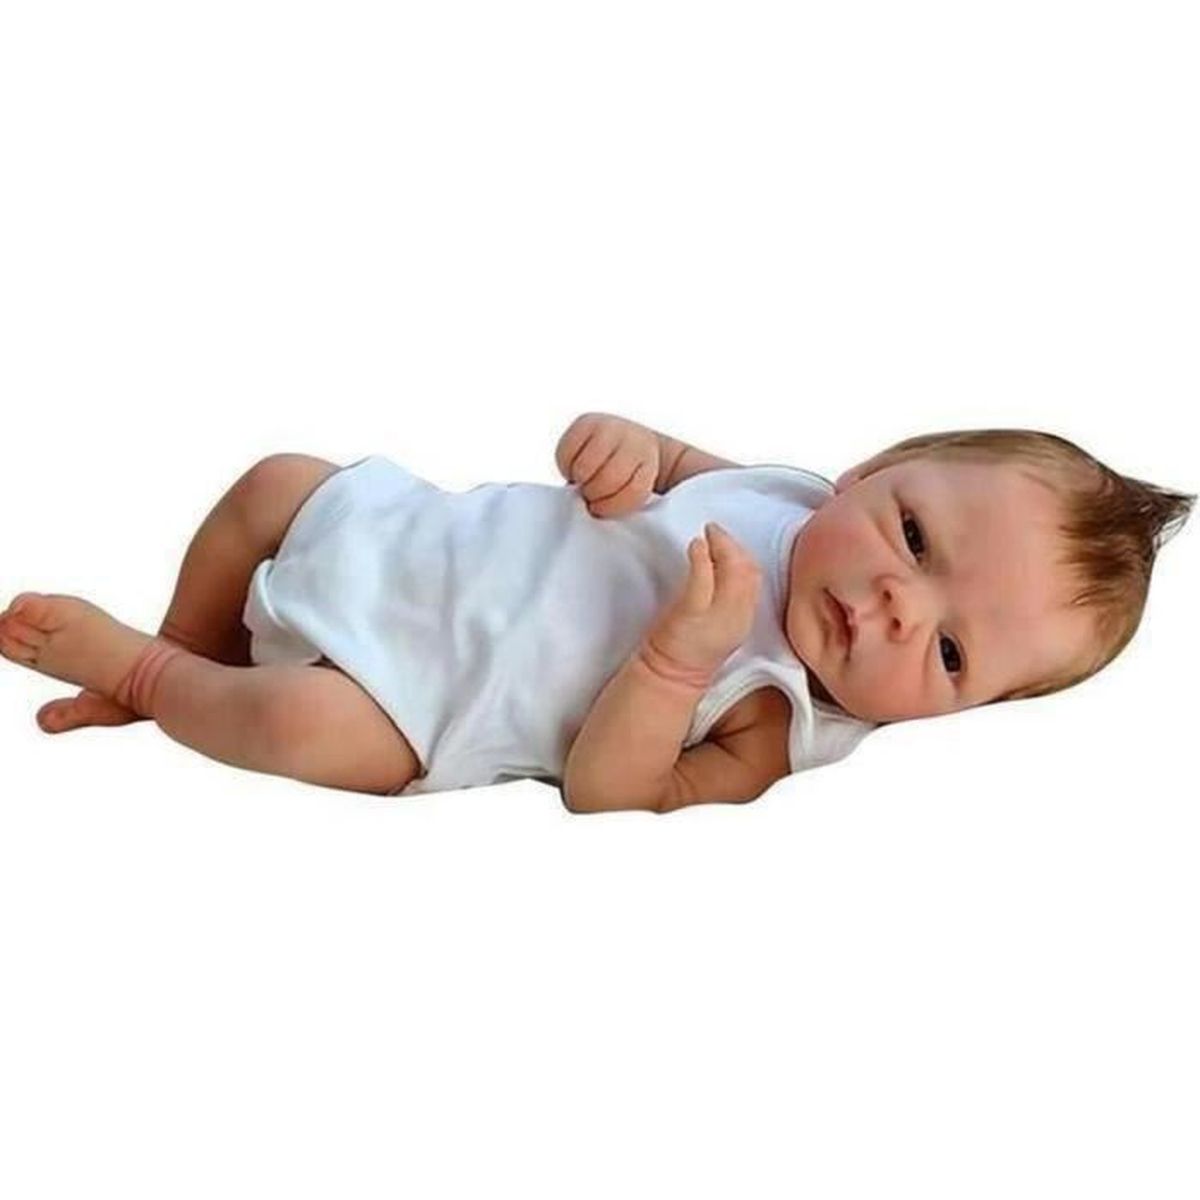 Nicery Poupée en Vinyle souple en silicone Reborn bébé 18inch 45cm Magnétique Bouche Lifelike Garçon Jouet Fille Bib Blanc Yeux Oreiller Ouvert Baby Doll A3FR 